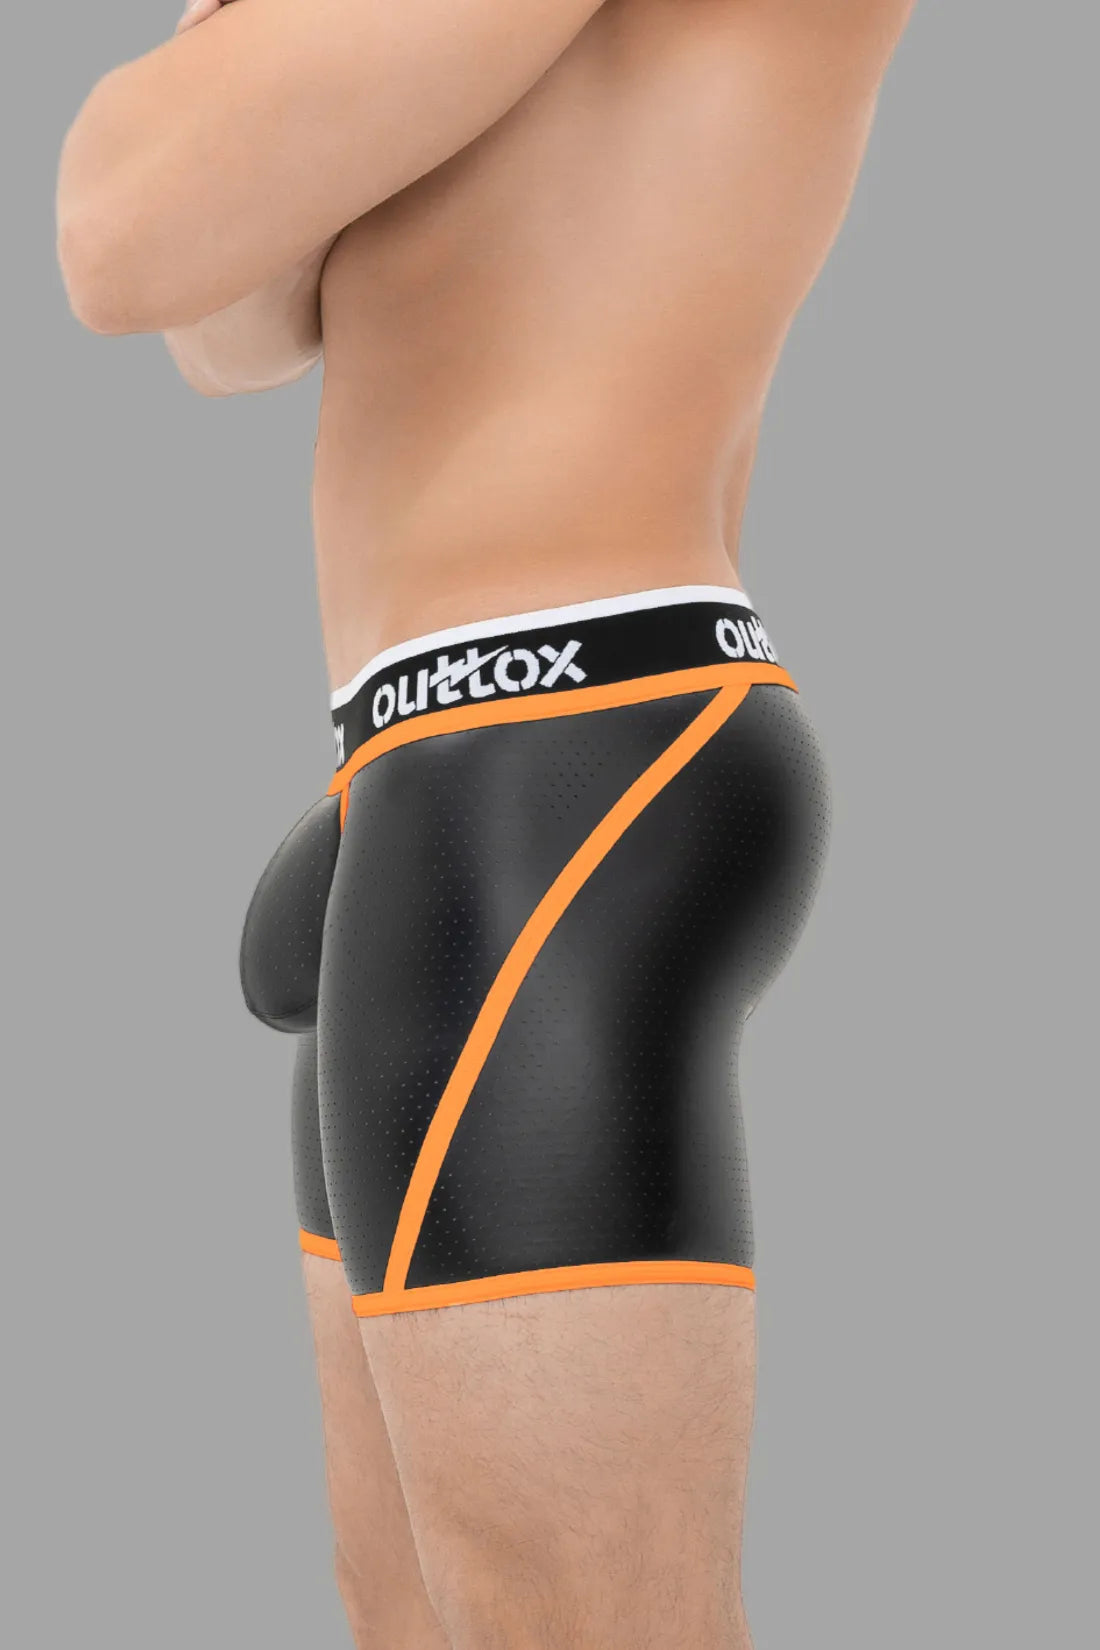 Outtox. Kurze Strumpfhose mit Wickel-Rücken. Schamkapsel mit Druckknopf. Schwarz und Orange